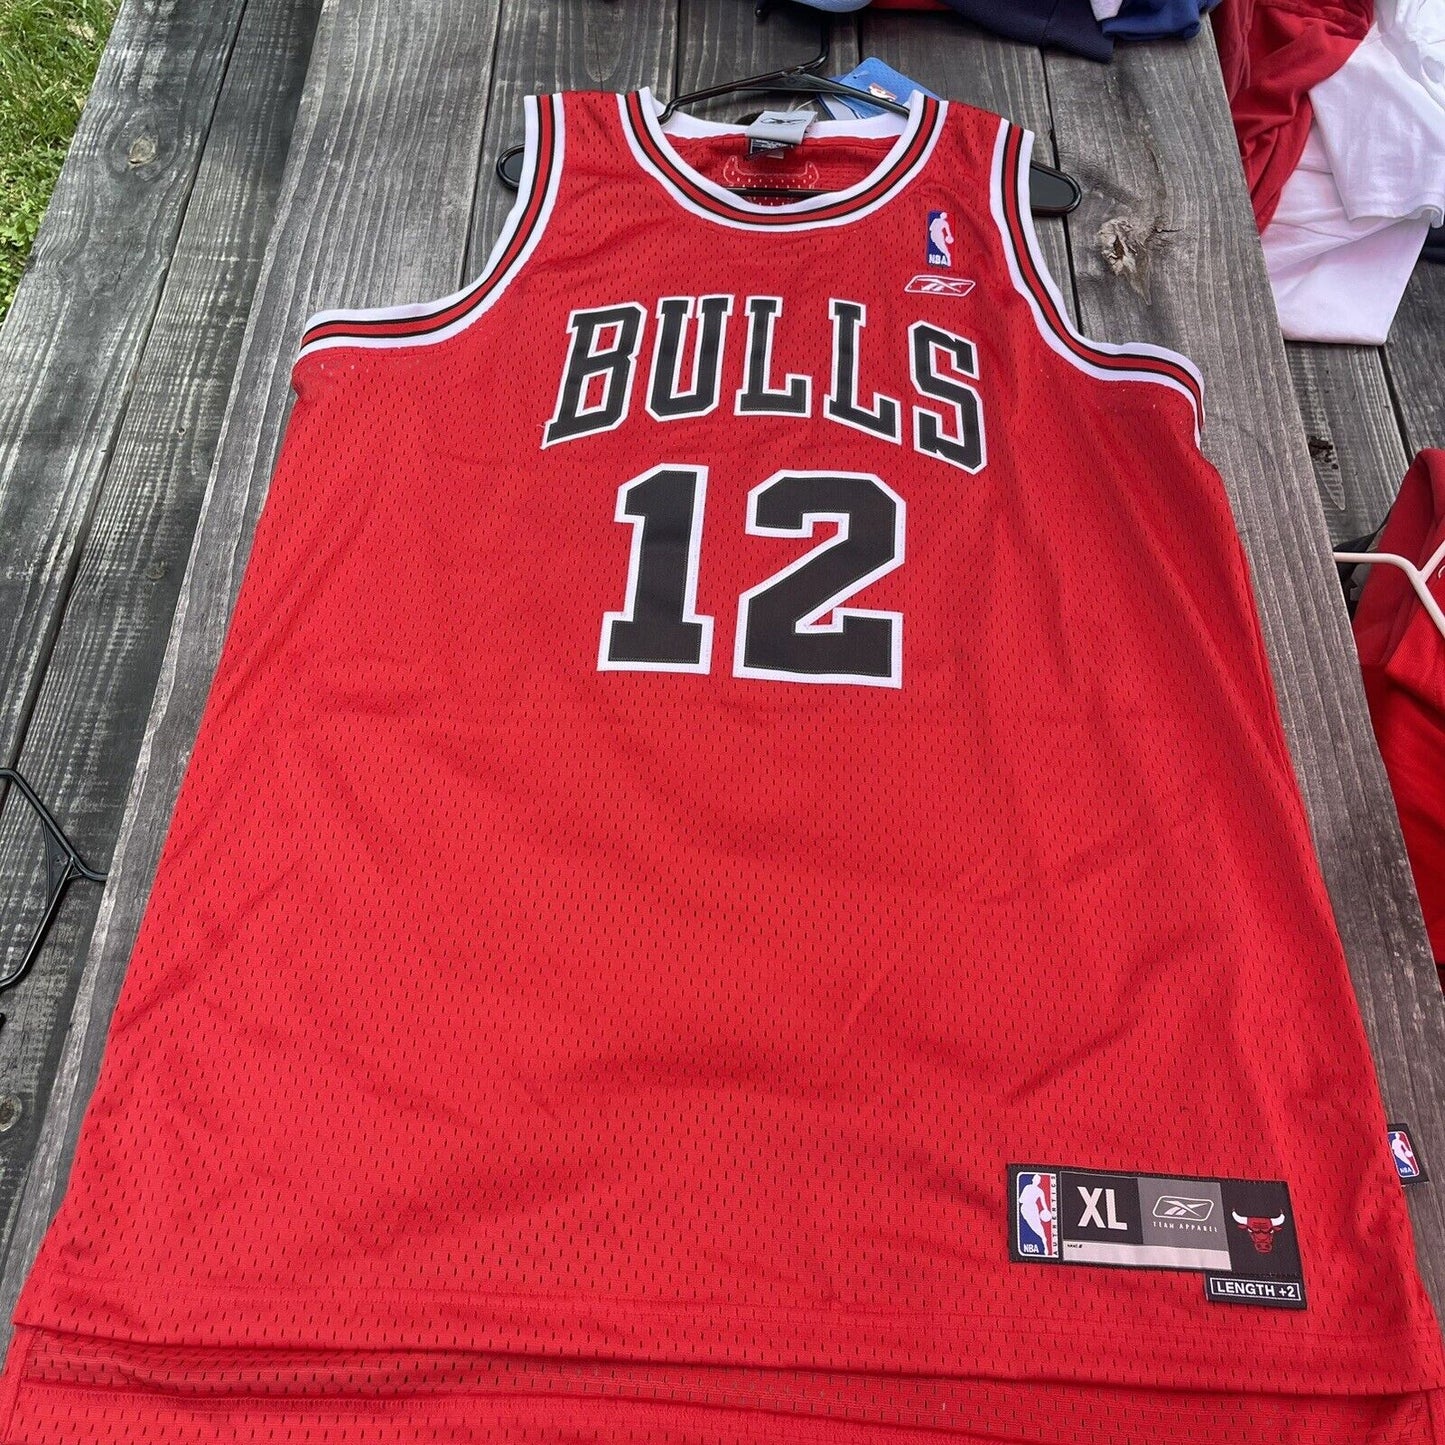 Reebok NBA  Chicago Bulls #12 Hinrich Jersey Xl